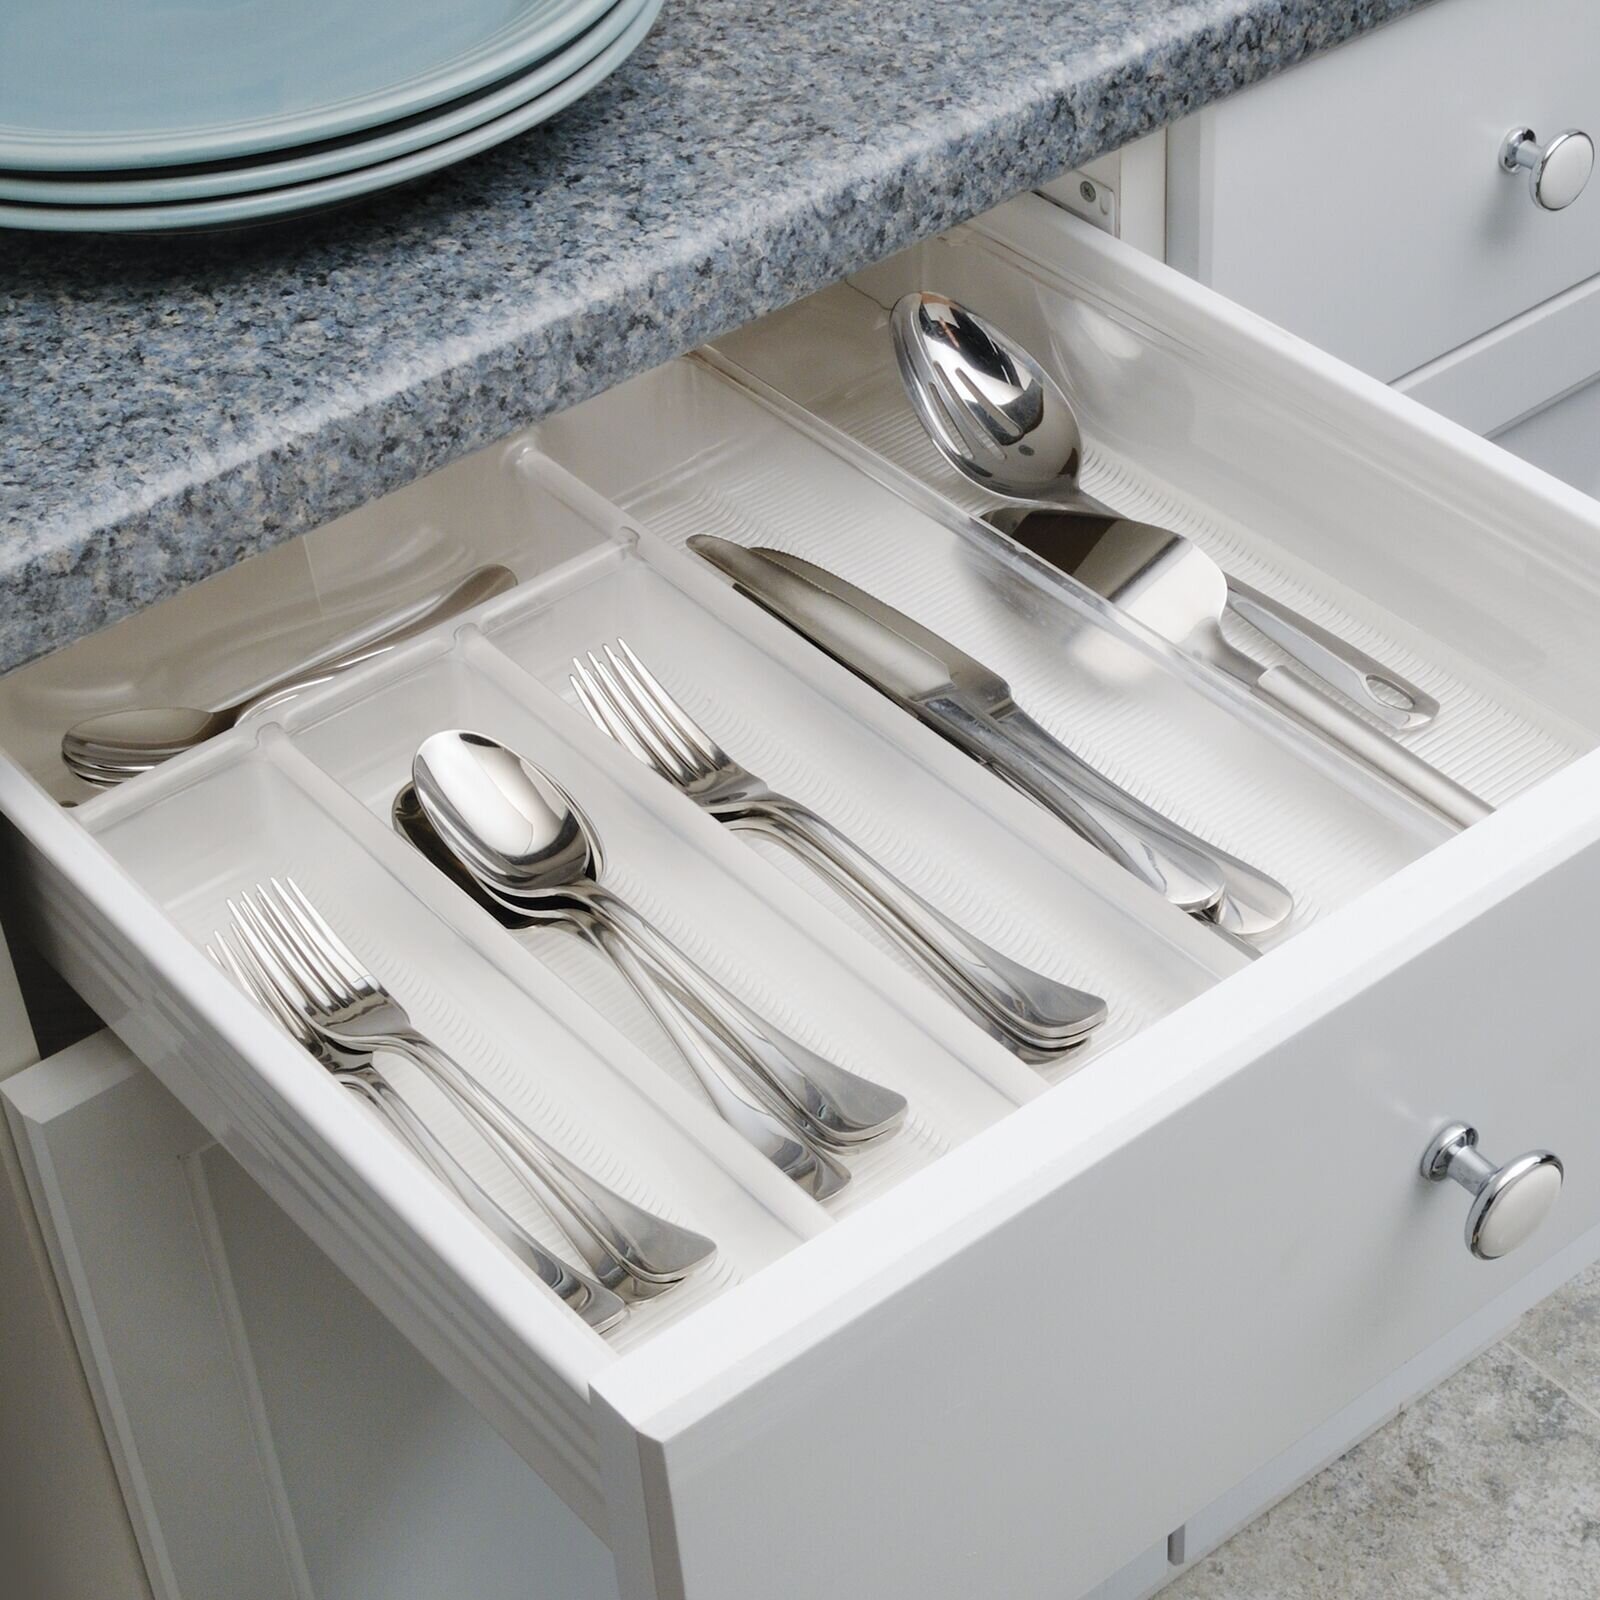 https://assets.wfcdn.com/im/24867205/compr-r85/1666/166617330/plastic-flatware-kitchen-utensils-drawer-organizer.jpg